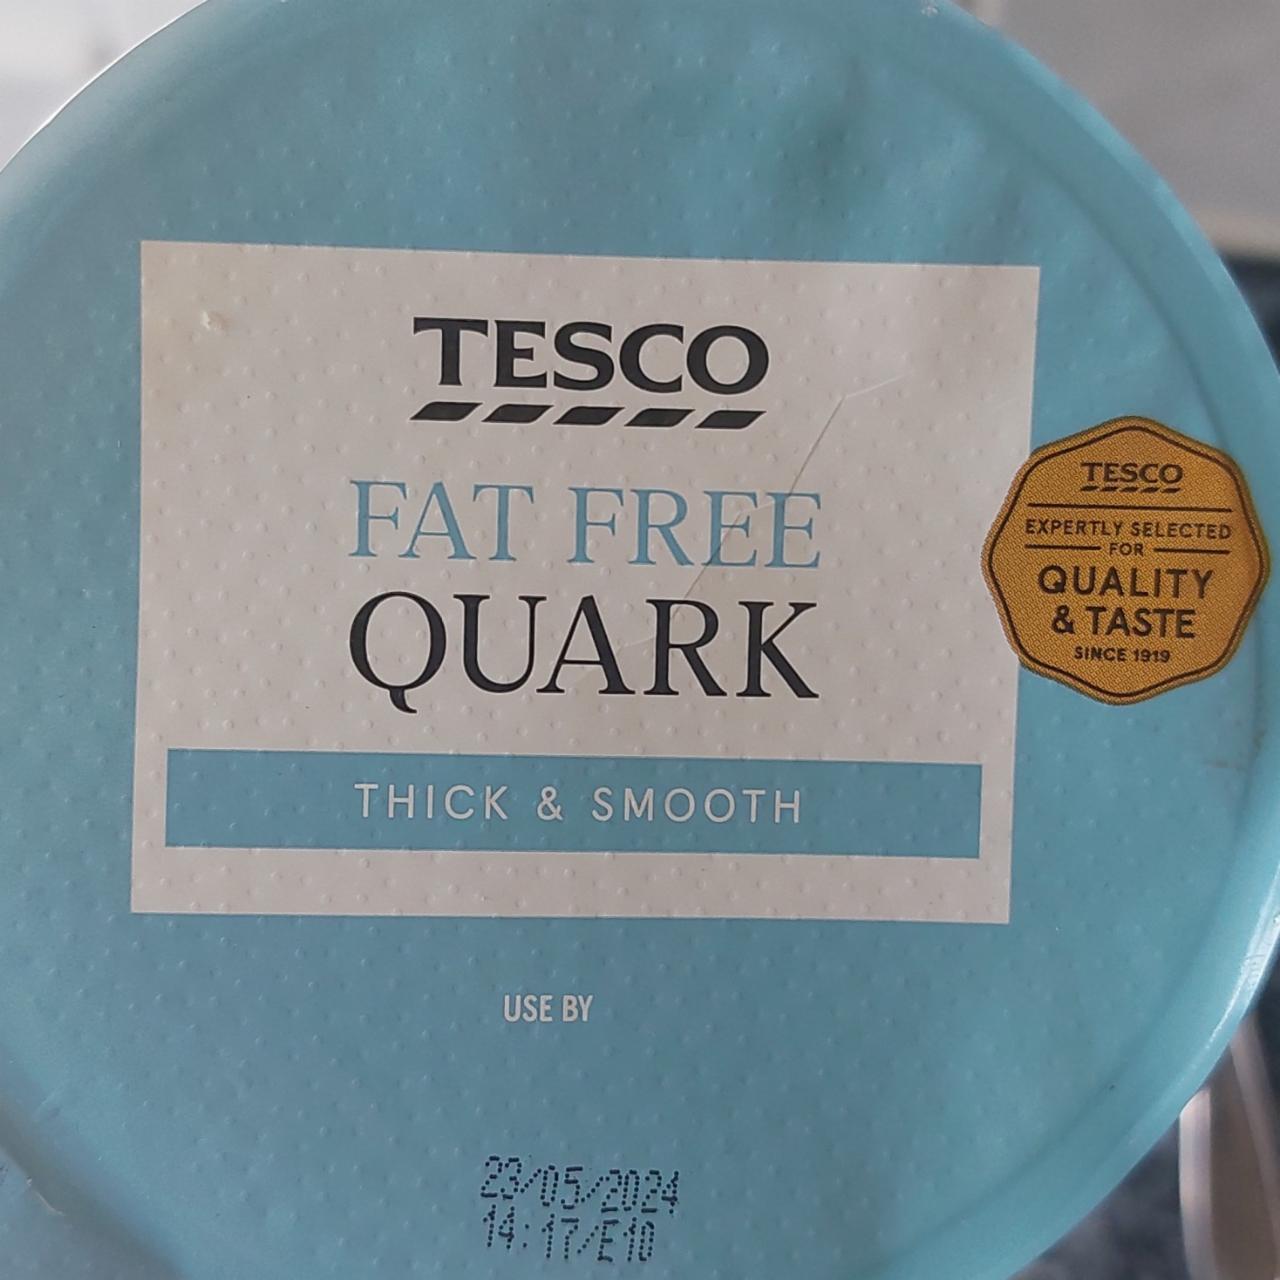 Fotografie - Fat free quark thick & smooth Tesco